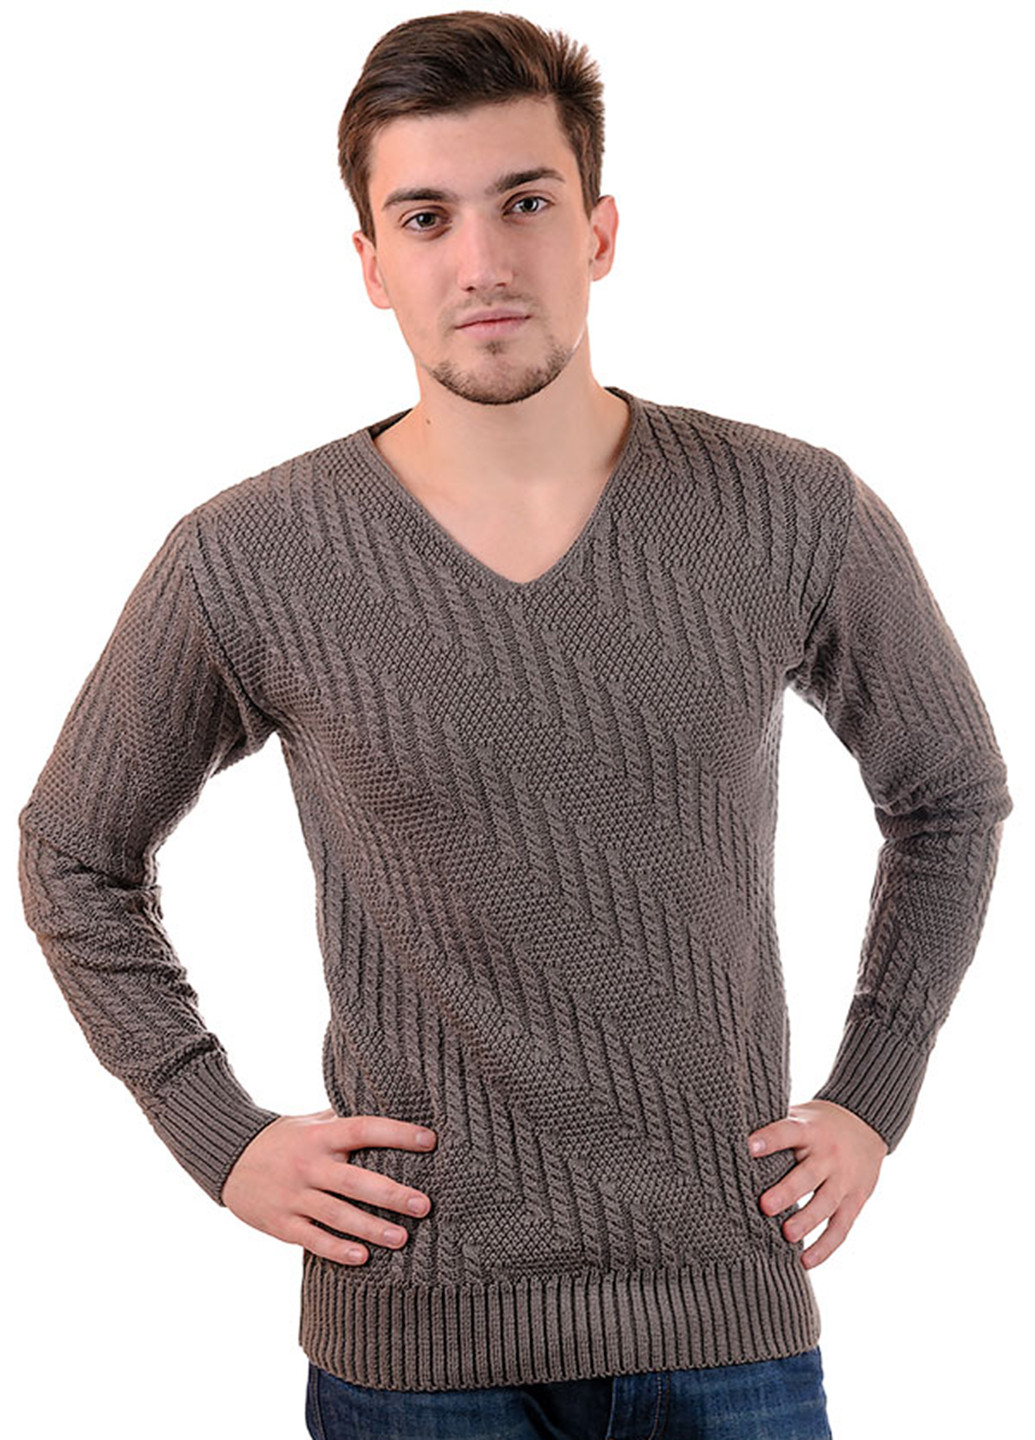 Кофейный демисезонный пуловер пуловер SVTR